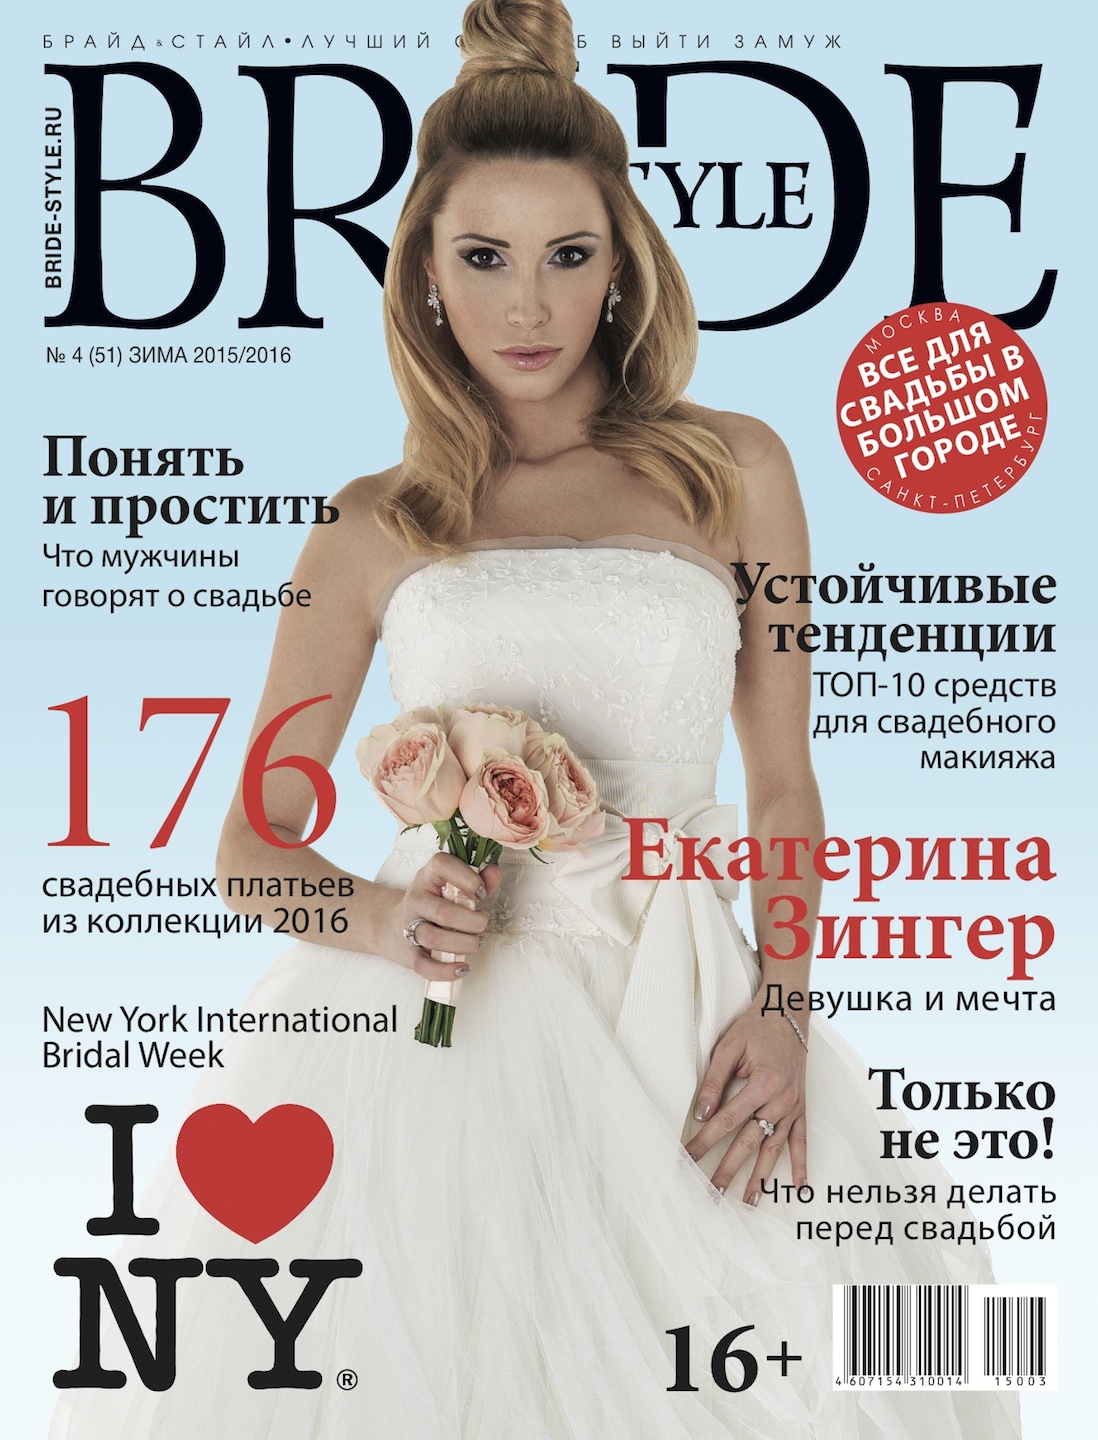 Свадебный журнал BRIDE. Зима 2015/2016